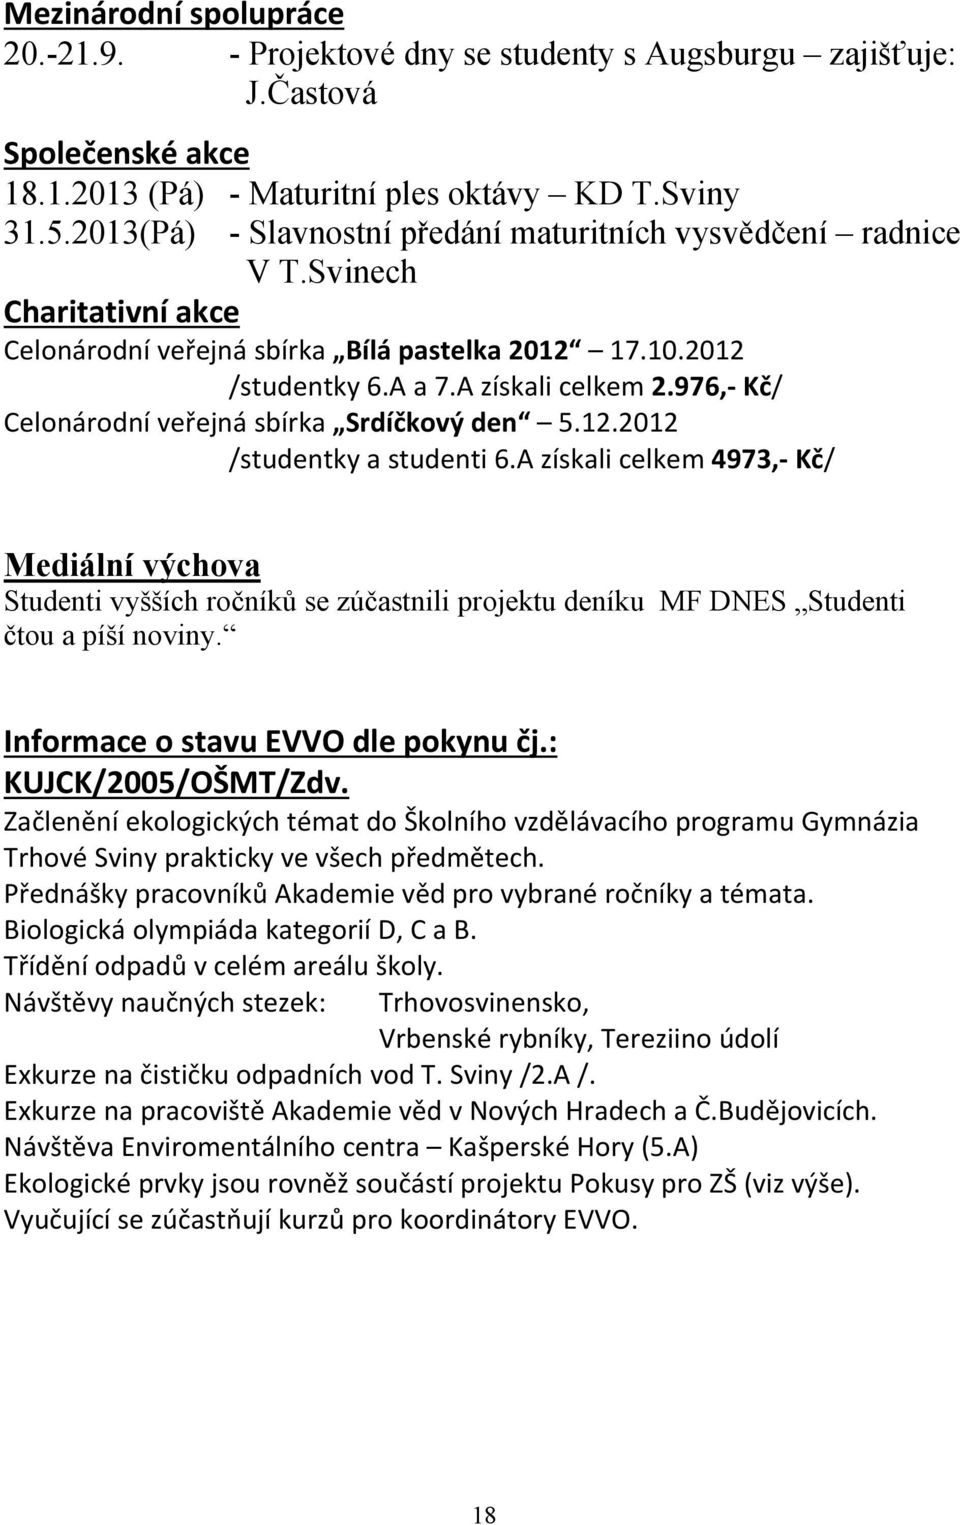 976, Kč/ Celonárodní veřejná sbírka Srdíčkový den 5.12.2012 /studentky a studenti 6.